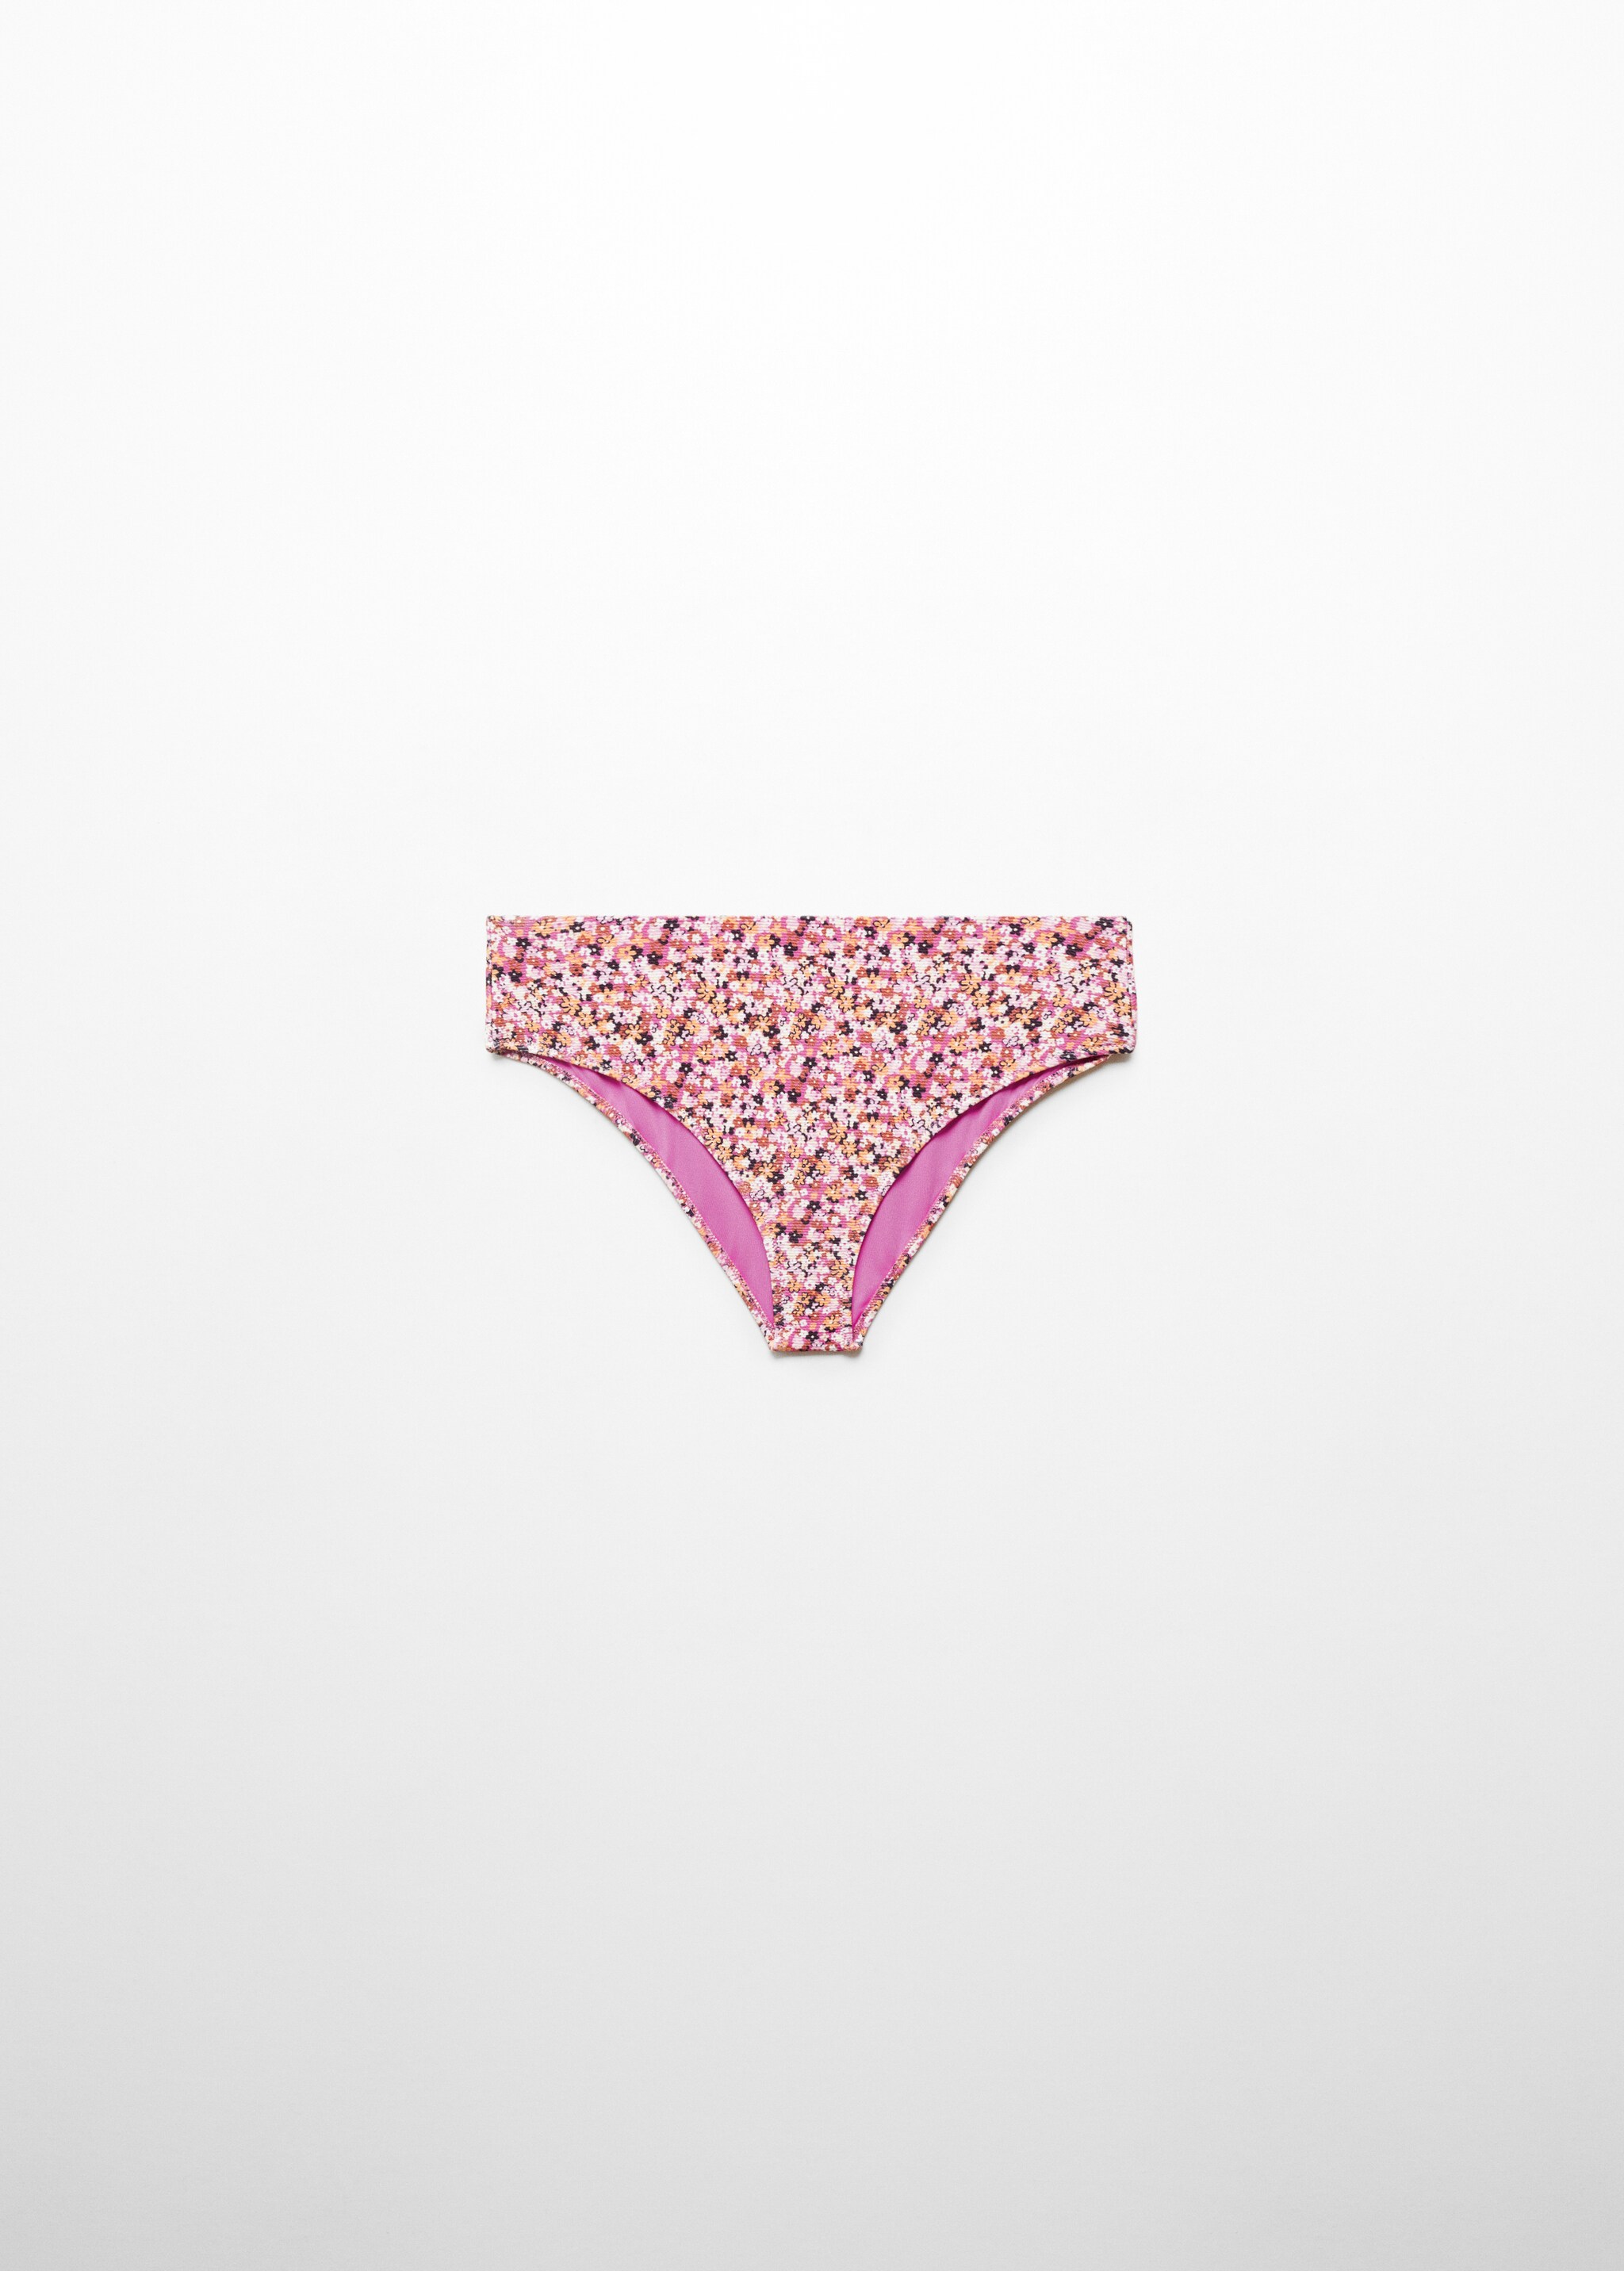 Braguita bikini floral tiro alto - Artículo sin modelo